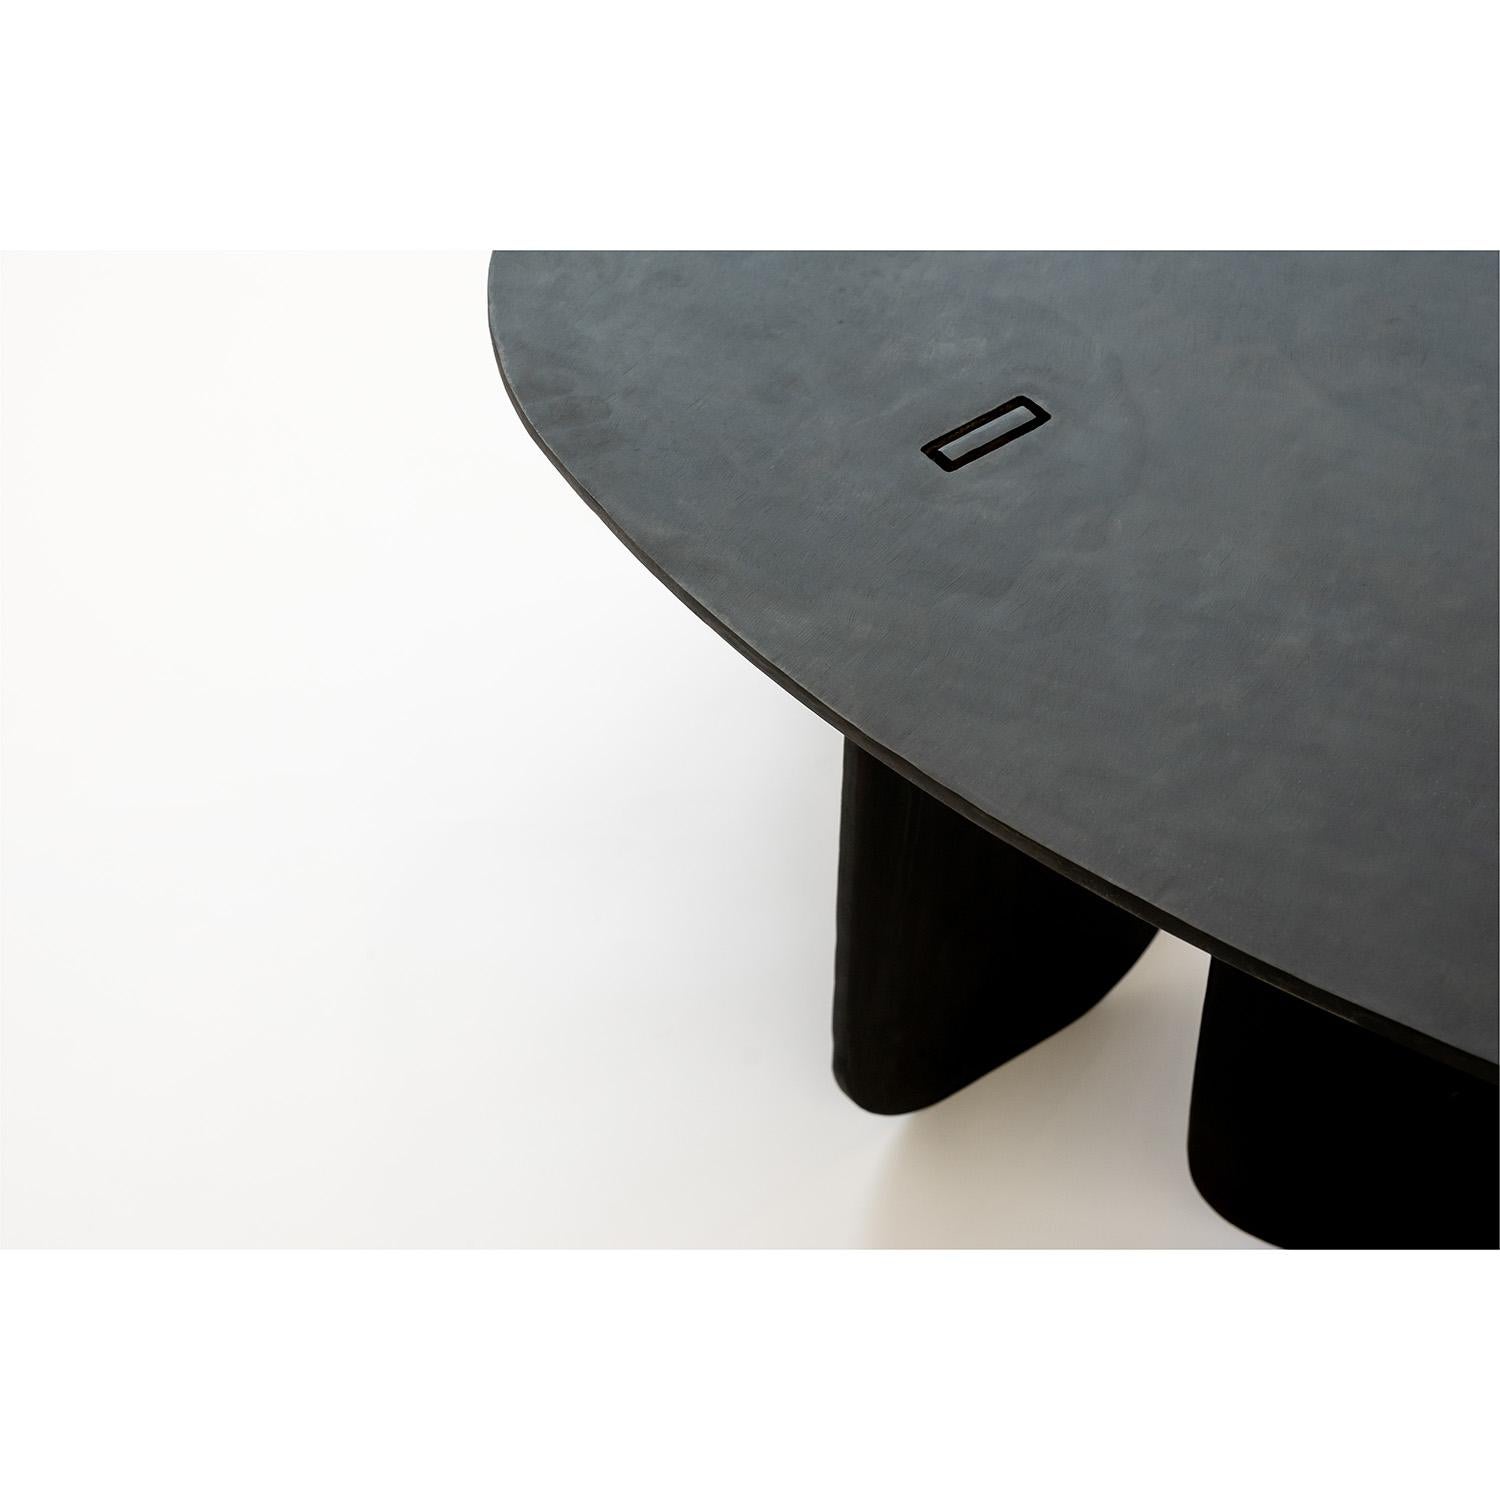 TABLE NO. 15 - TABLE D'APPOINT 
J.M. Szymanski
d. 2019

Cette table d'appoint d'inspiration Noguchi est fabriquée à la main en acier de 3/8